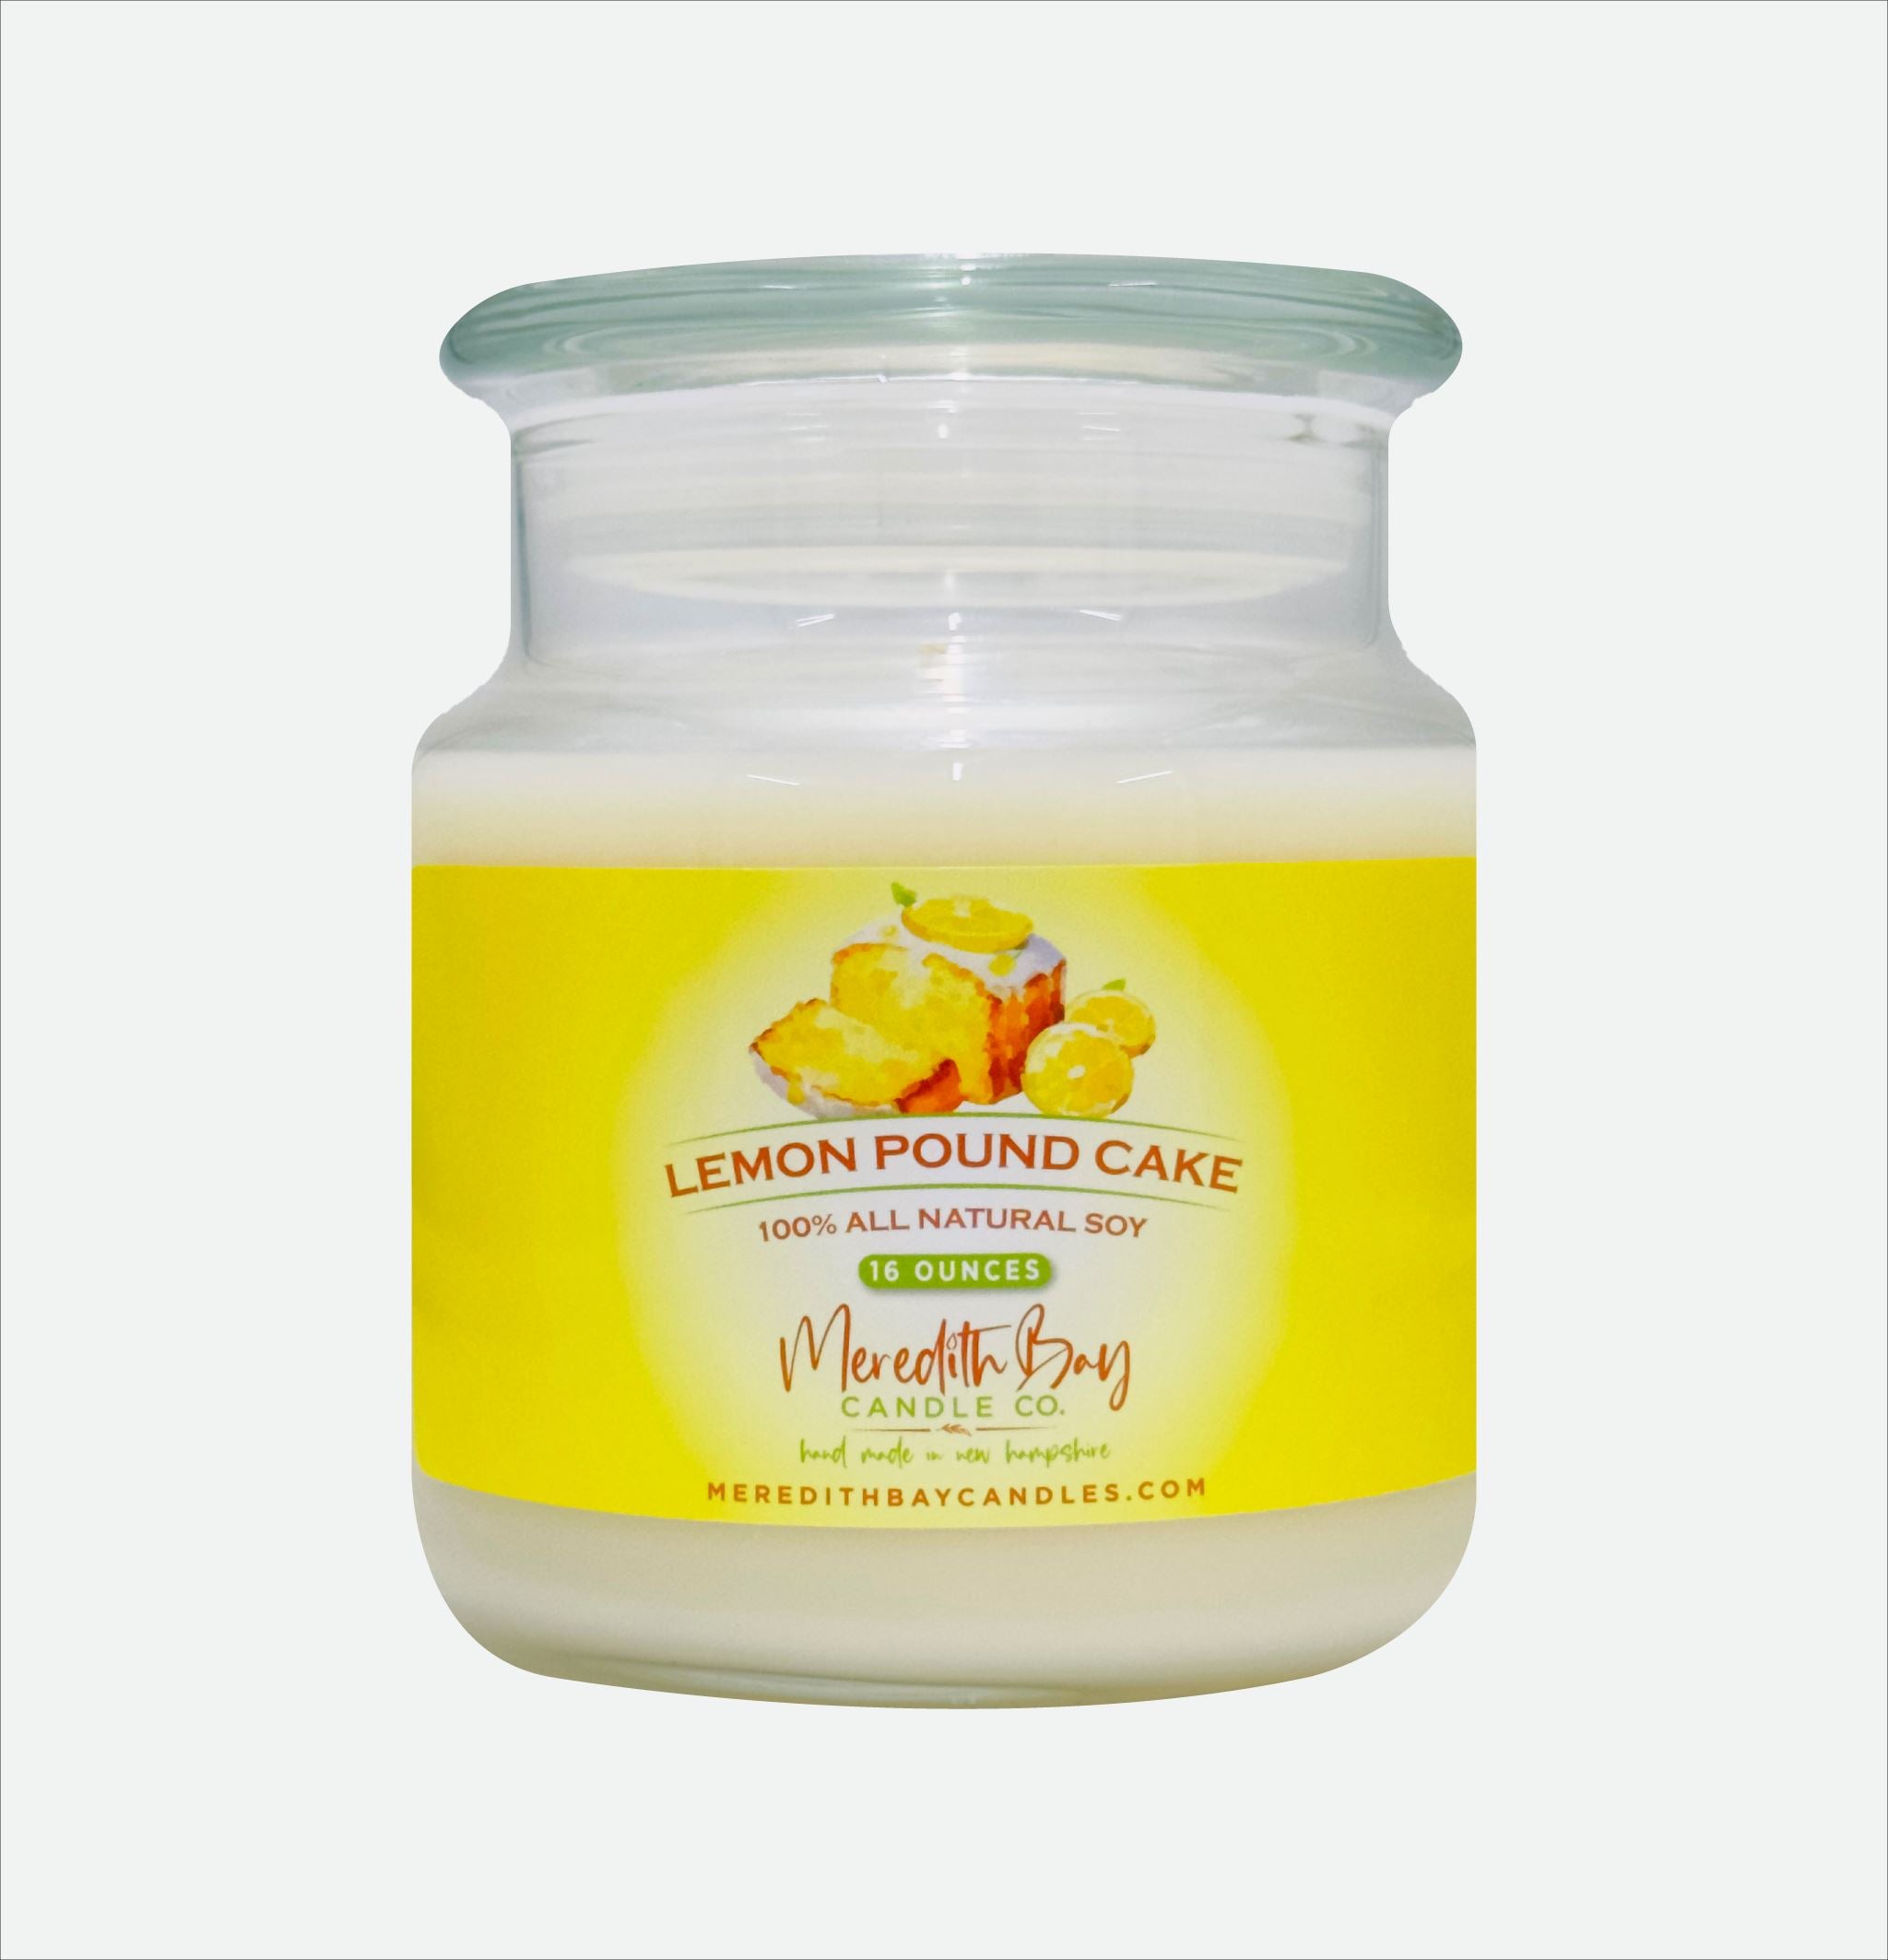 Lemon Pound Cake Soy Candle Meredith Bay Candle Co 16 Oz 